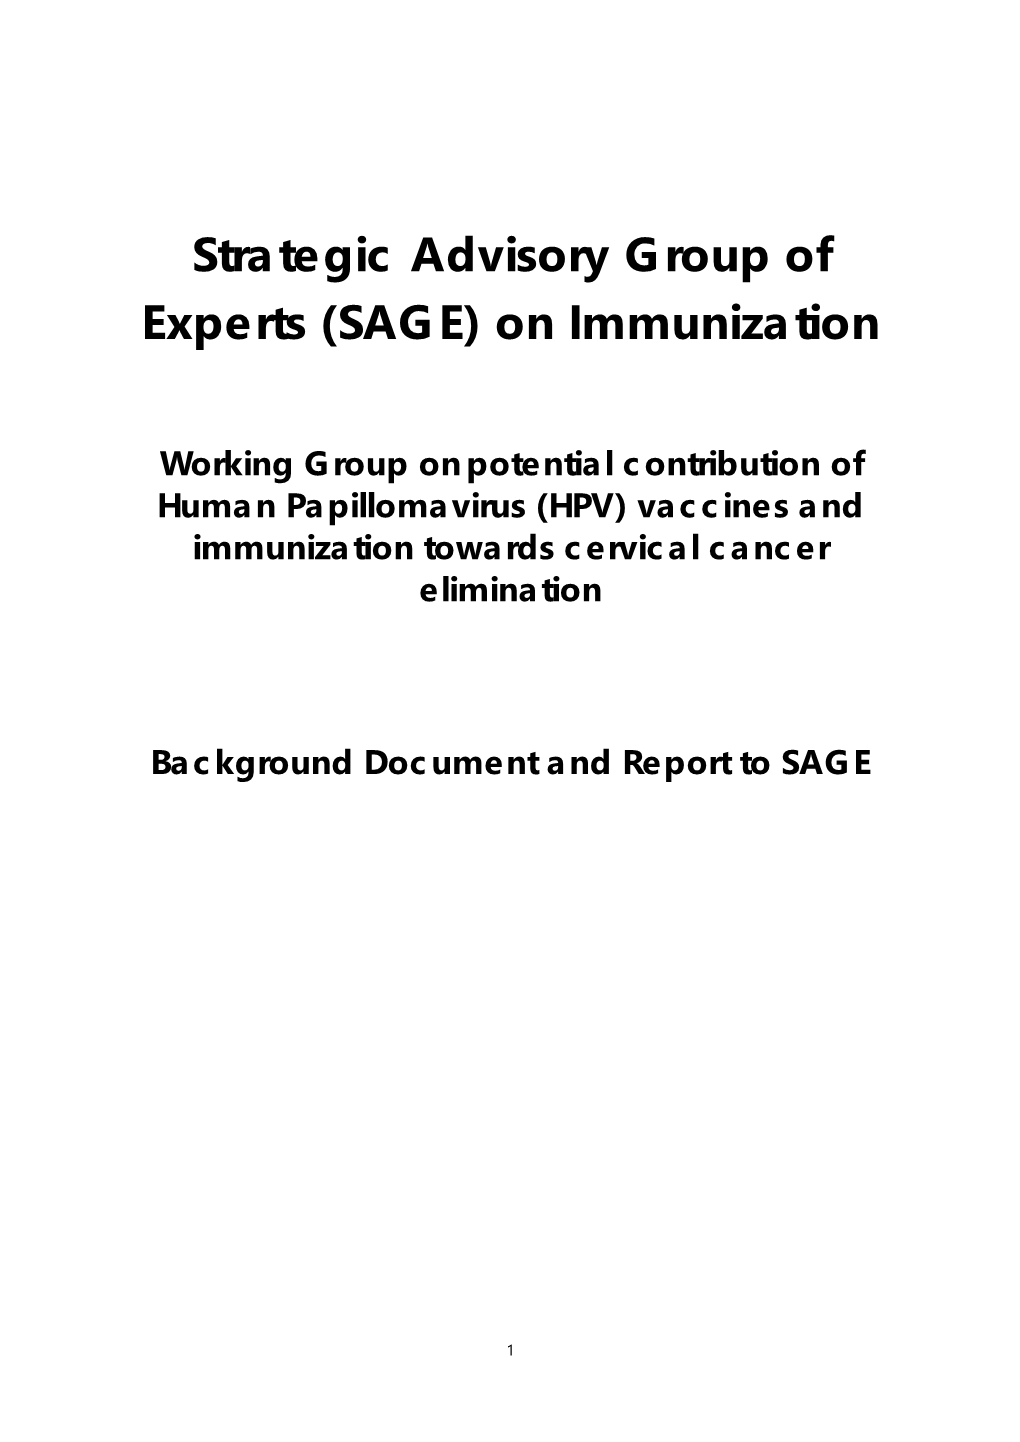 Strategic Advisory Group of Experts (SAGE) on Immunization